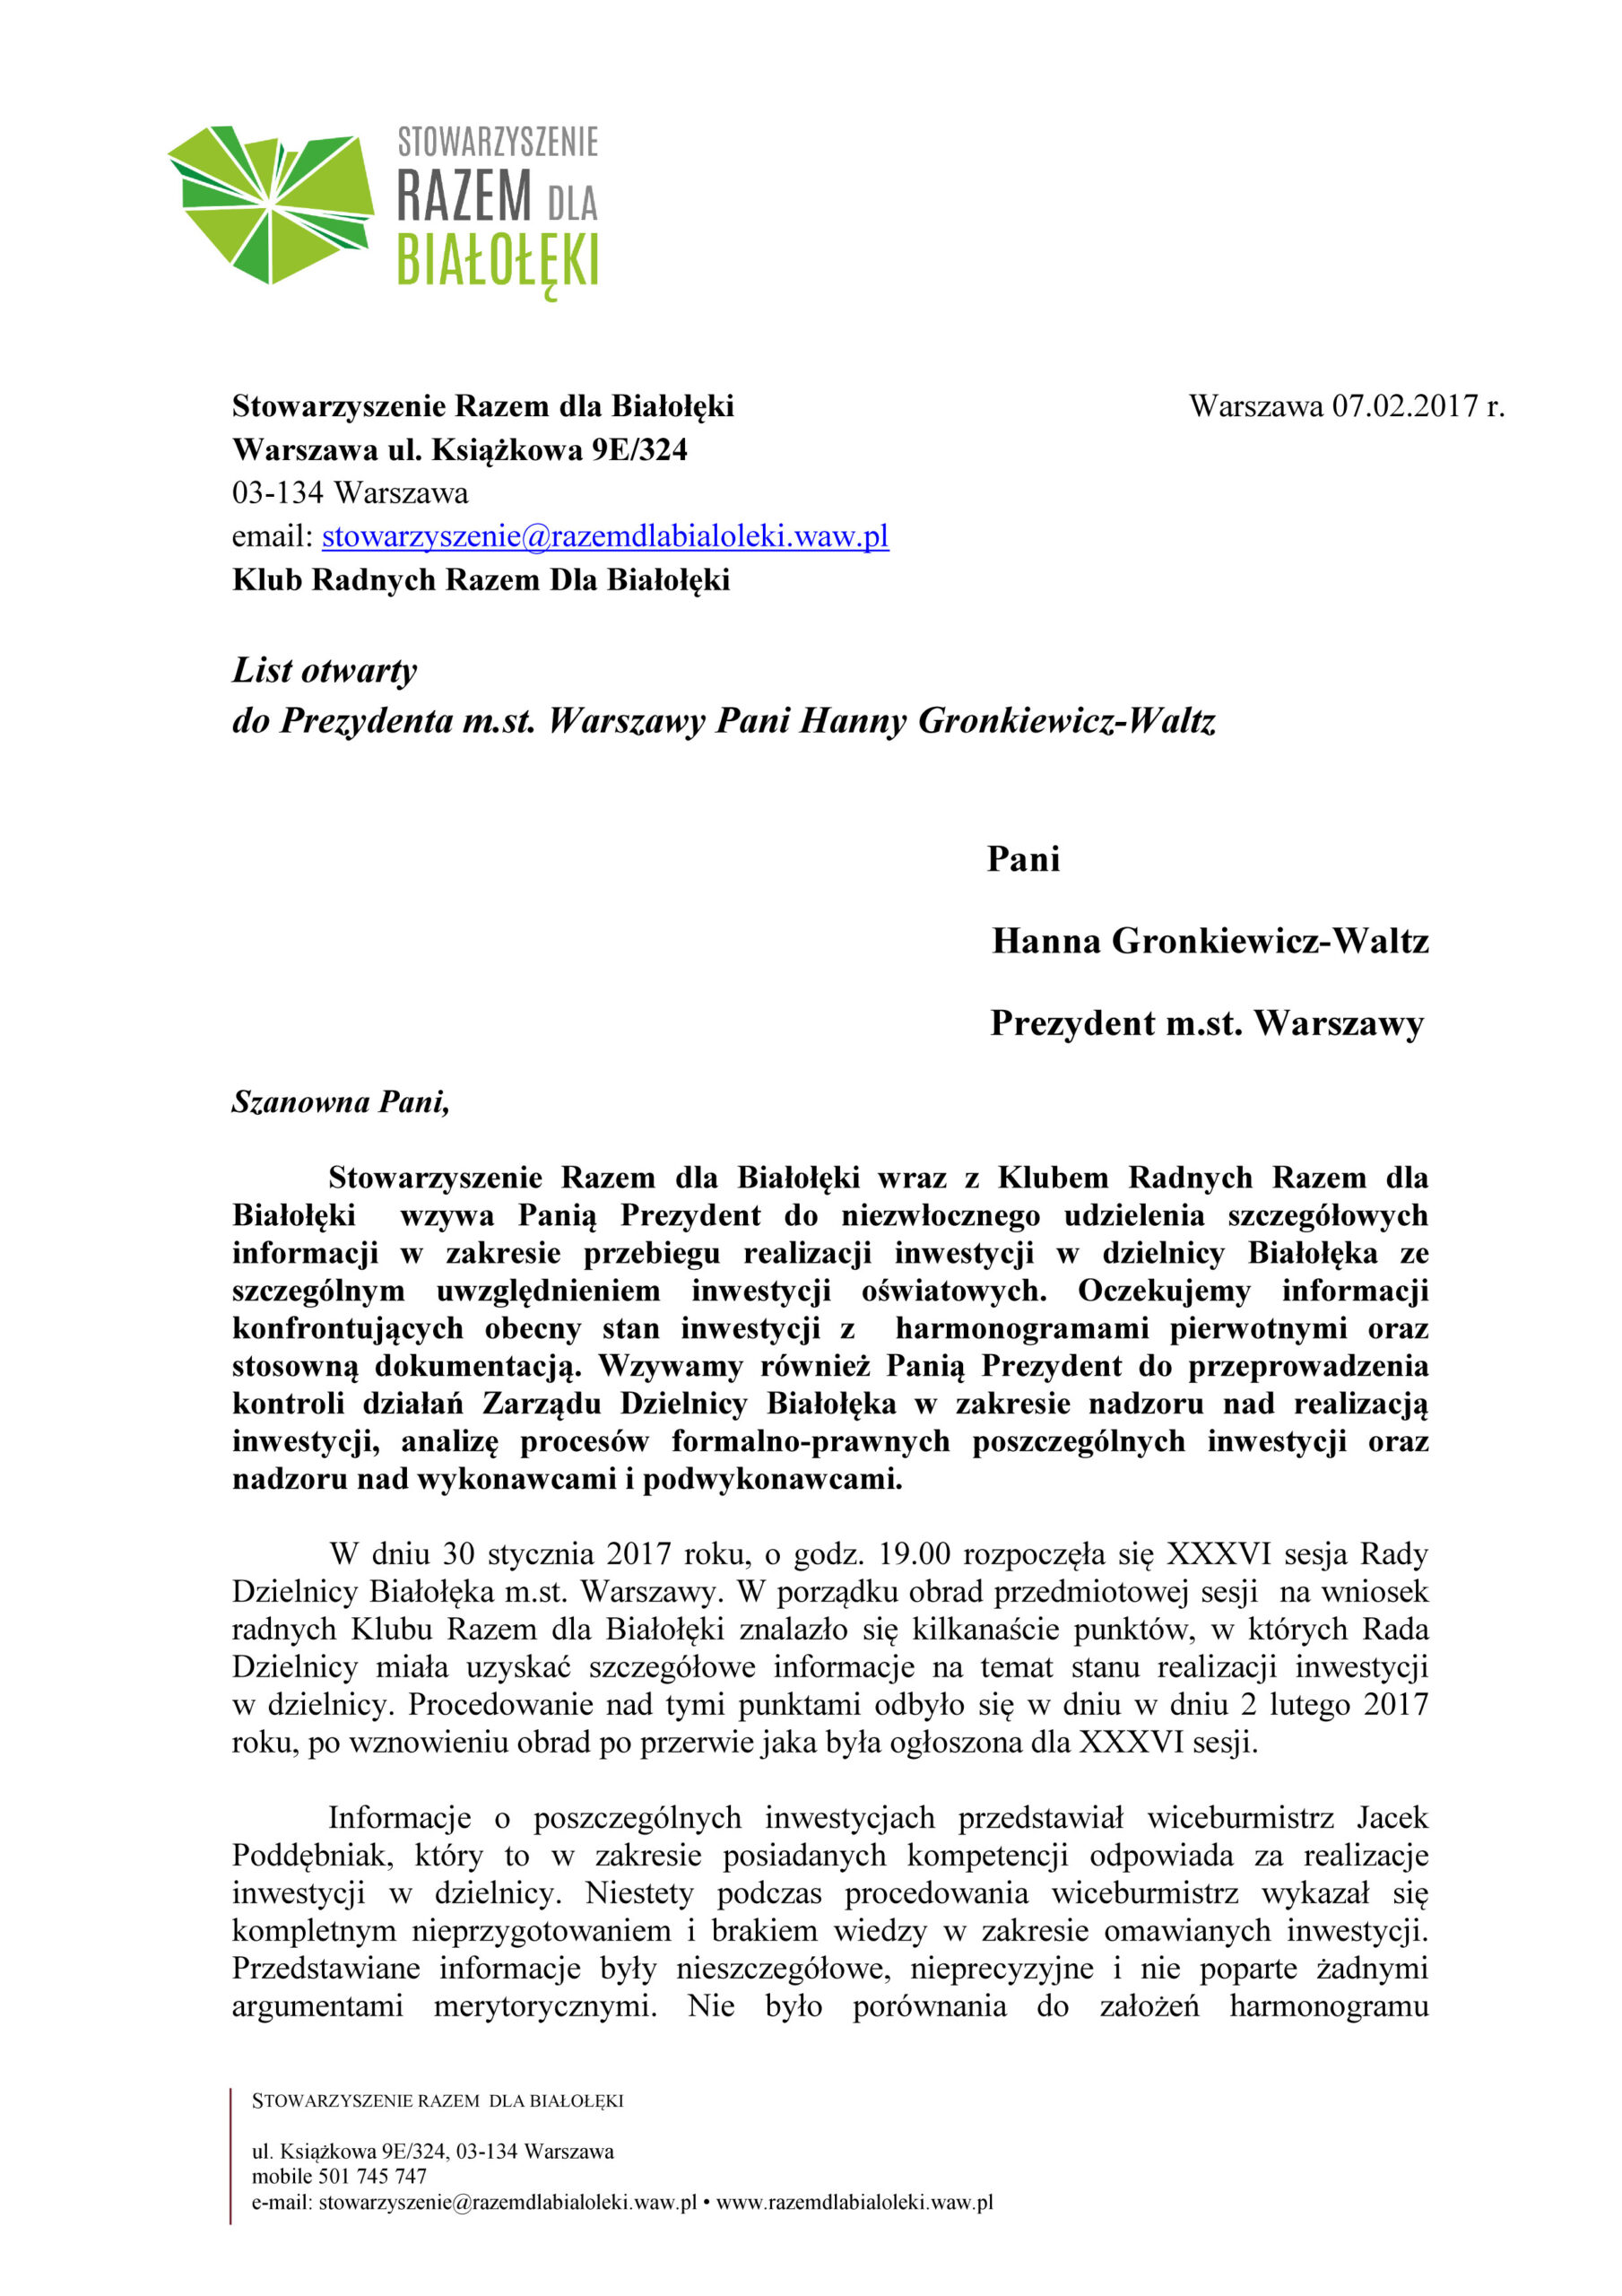 List otwarty  do Prezydenta m.st. Warszawy Pani Hanny Gronkiewicz-Waltz